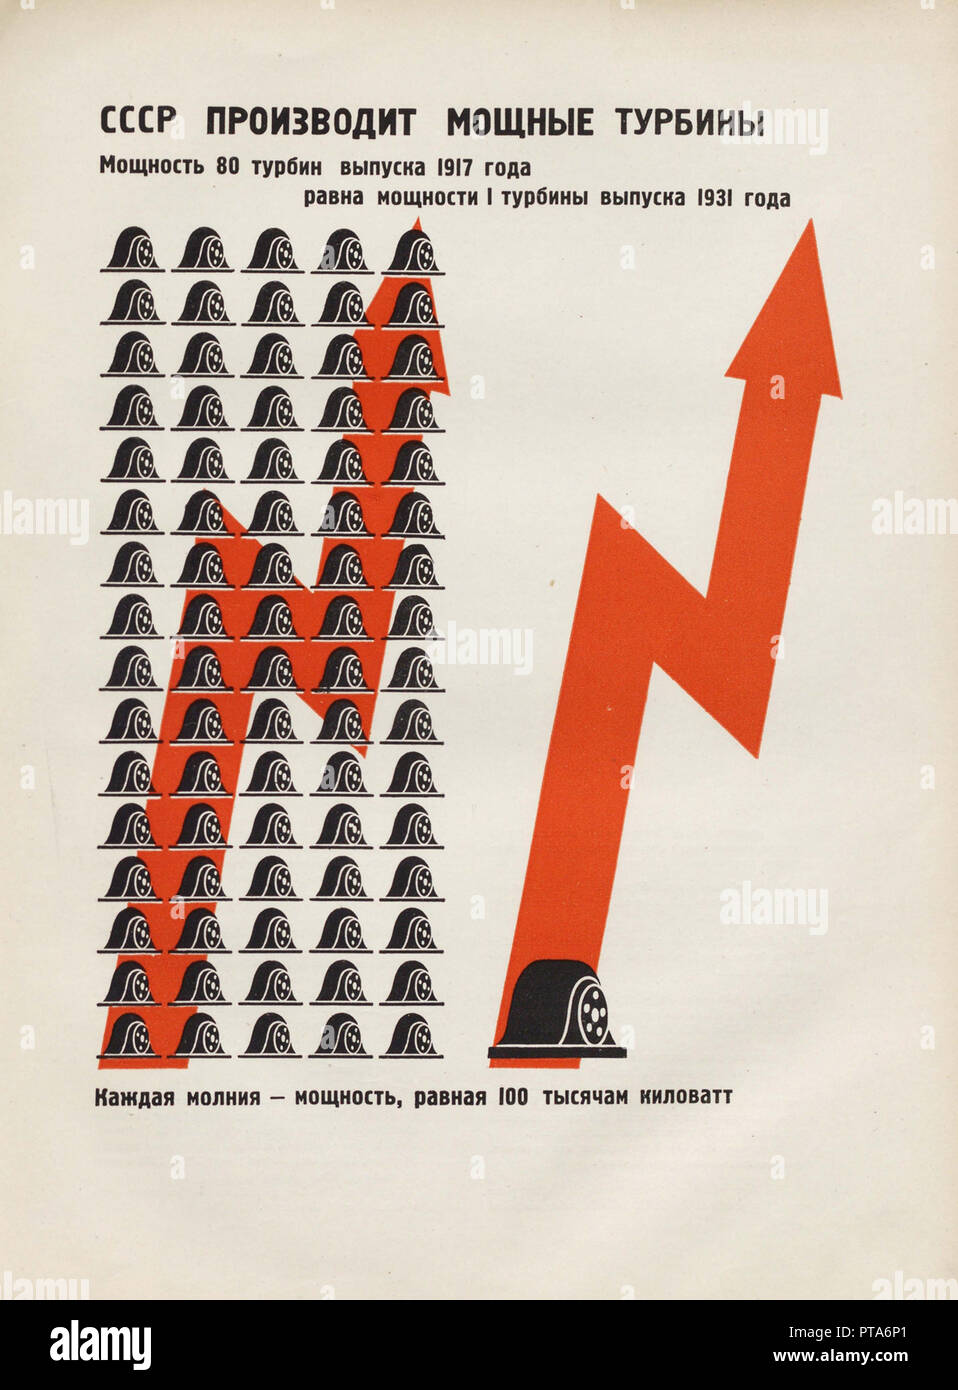 Der udssr produziert leistungsstarke Turbinen. Abbildung aus der UDSSR baut Sozialismus, 1933. Schöpfer: Lissitzky, El (1890-1941). Stockfoto